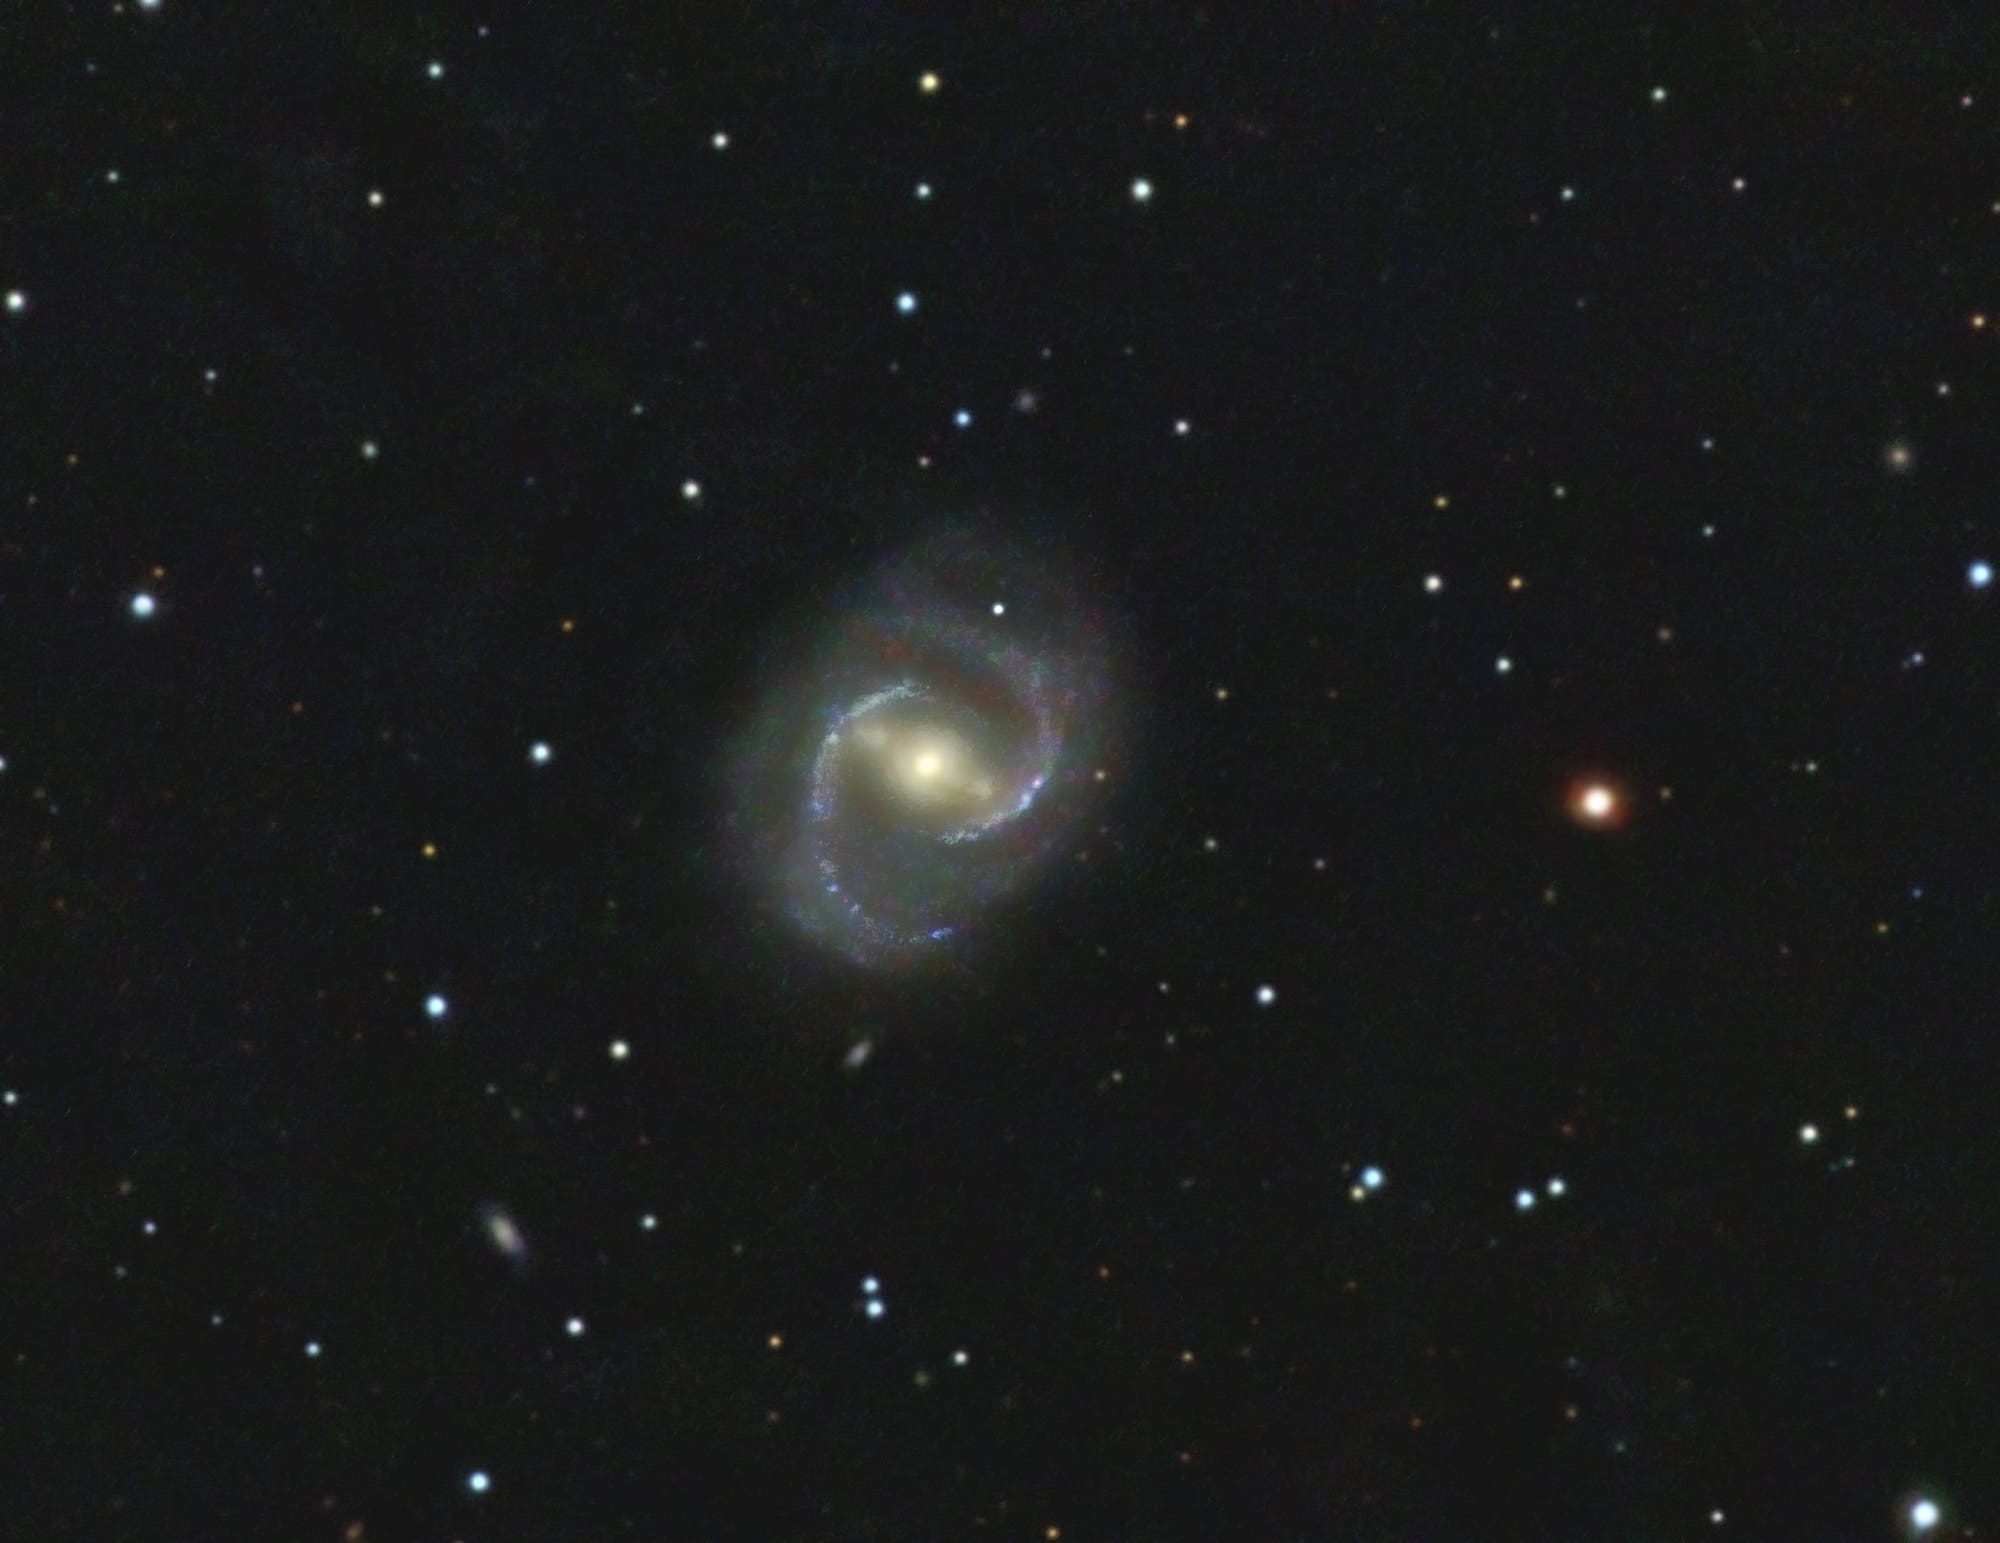 Messier 91